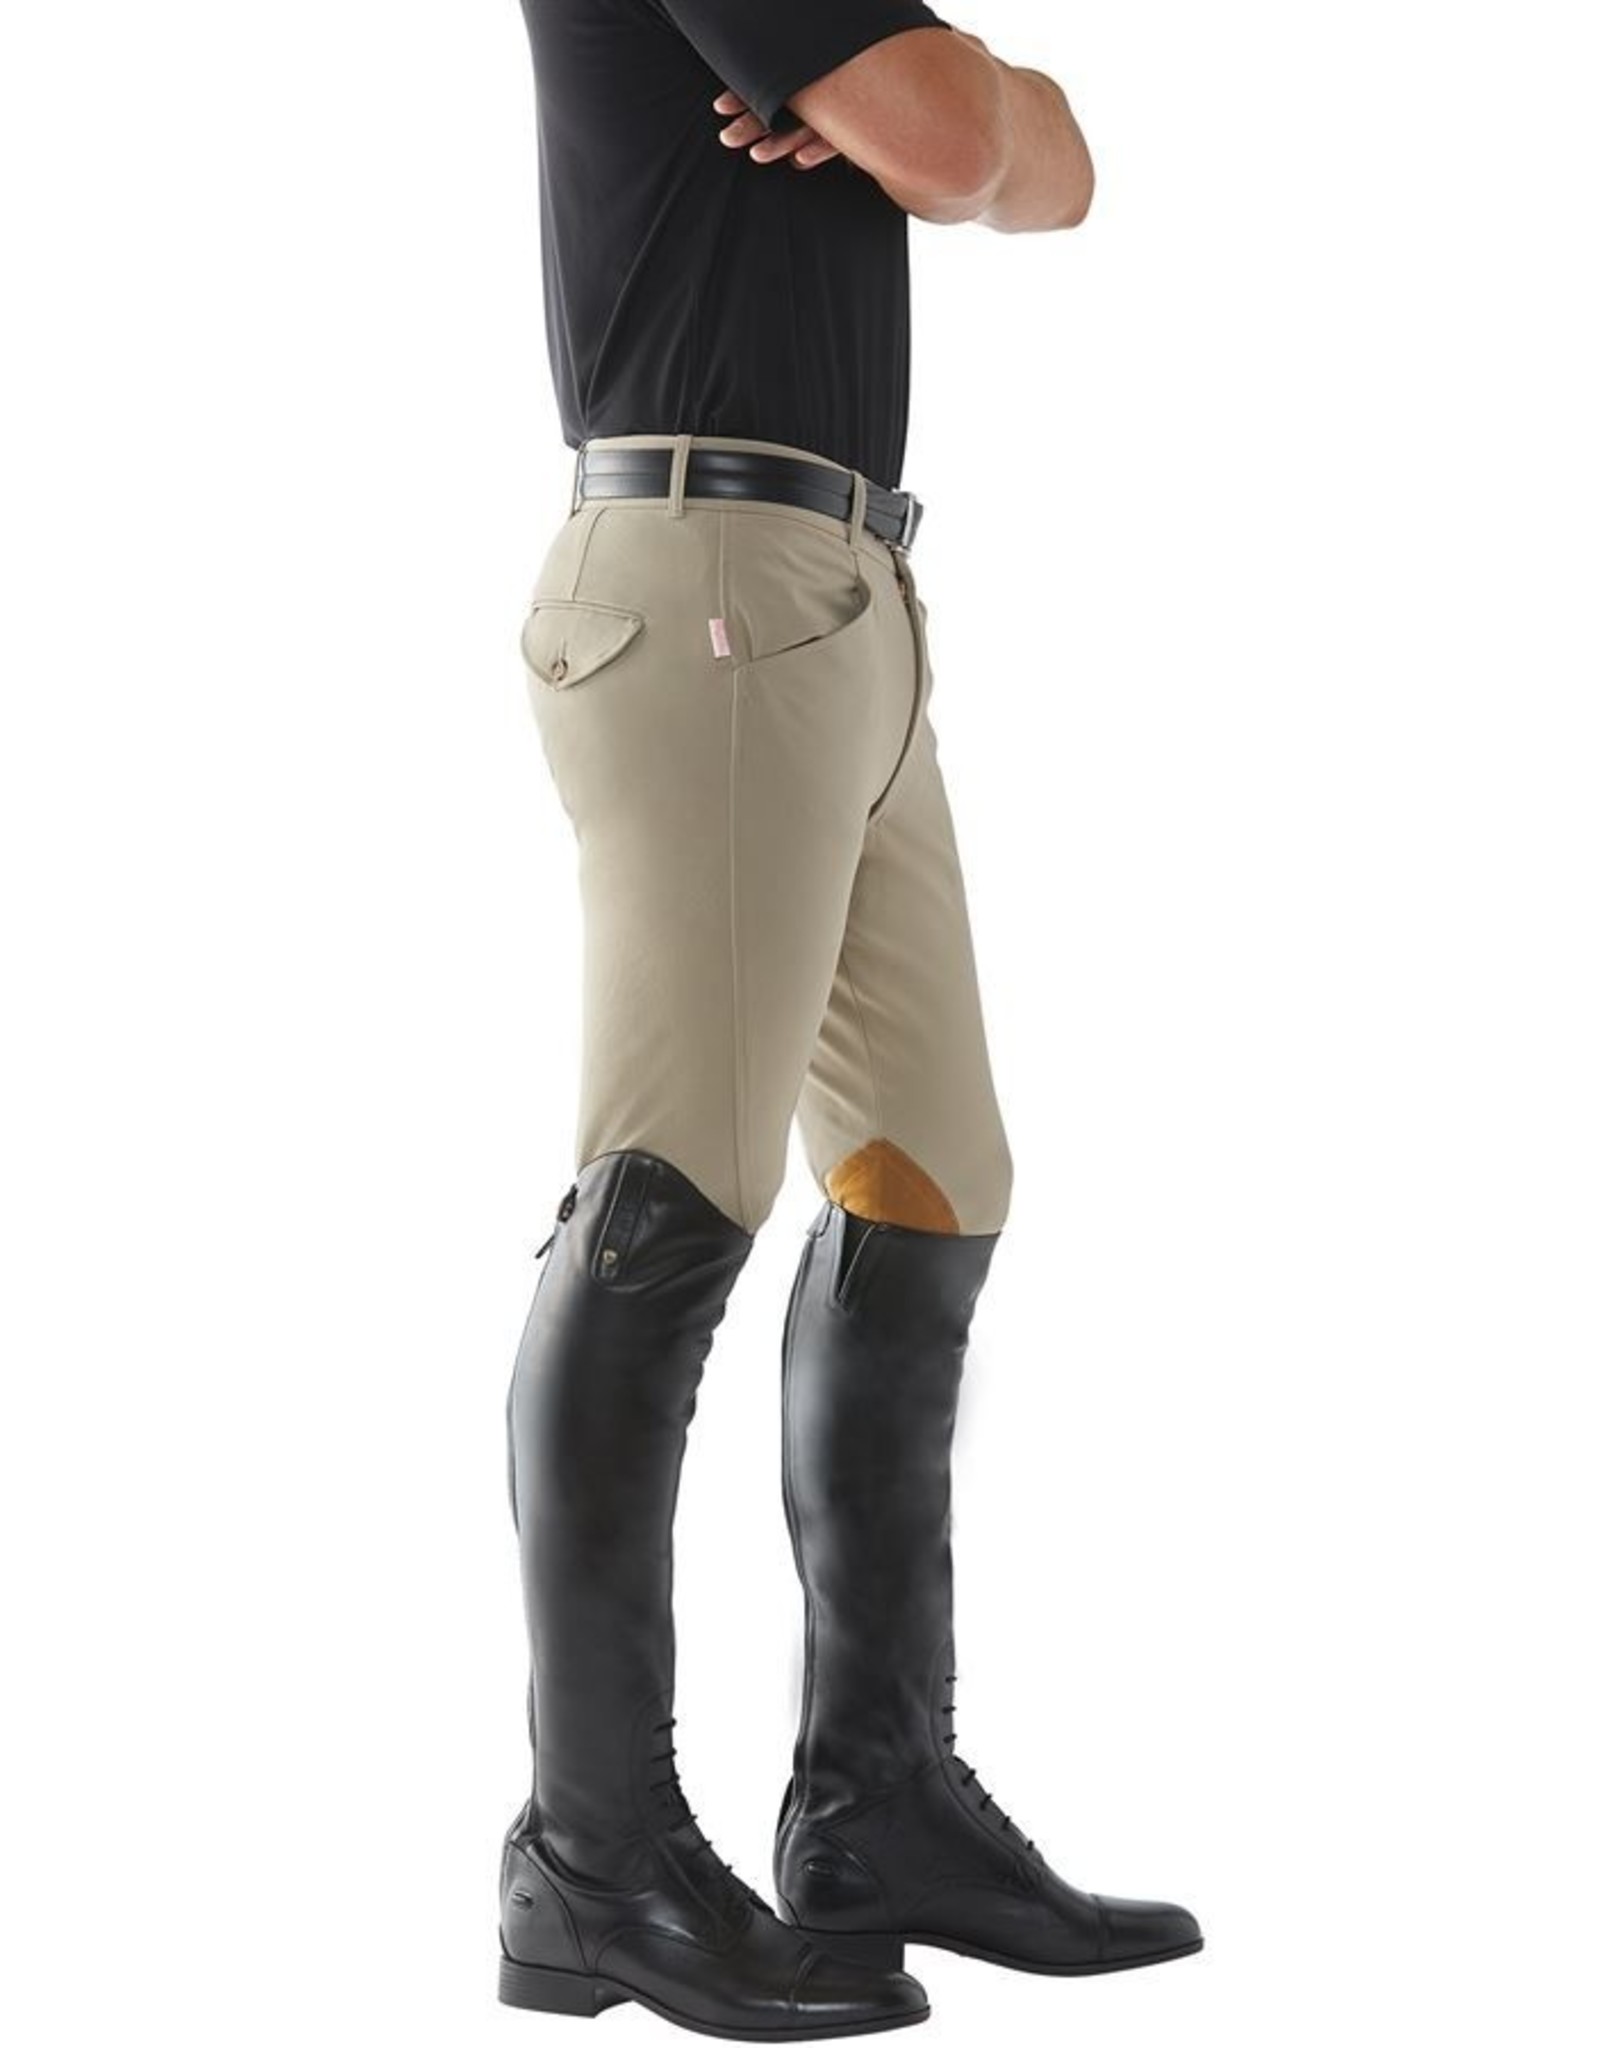 Calabasas Saddlery - Tailored Sportsman Men's Knee Patch Breeches -  Calabasas Saddlery